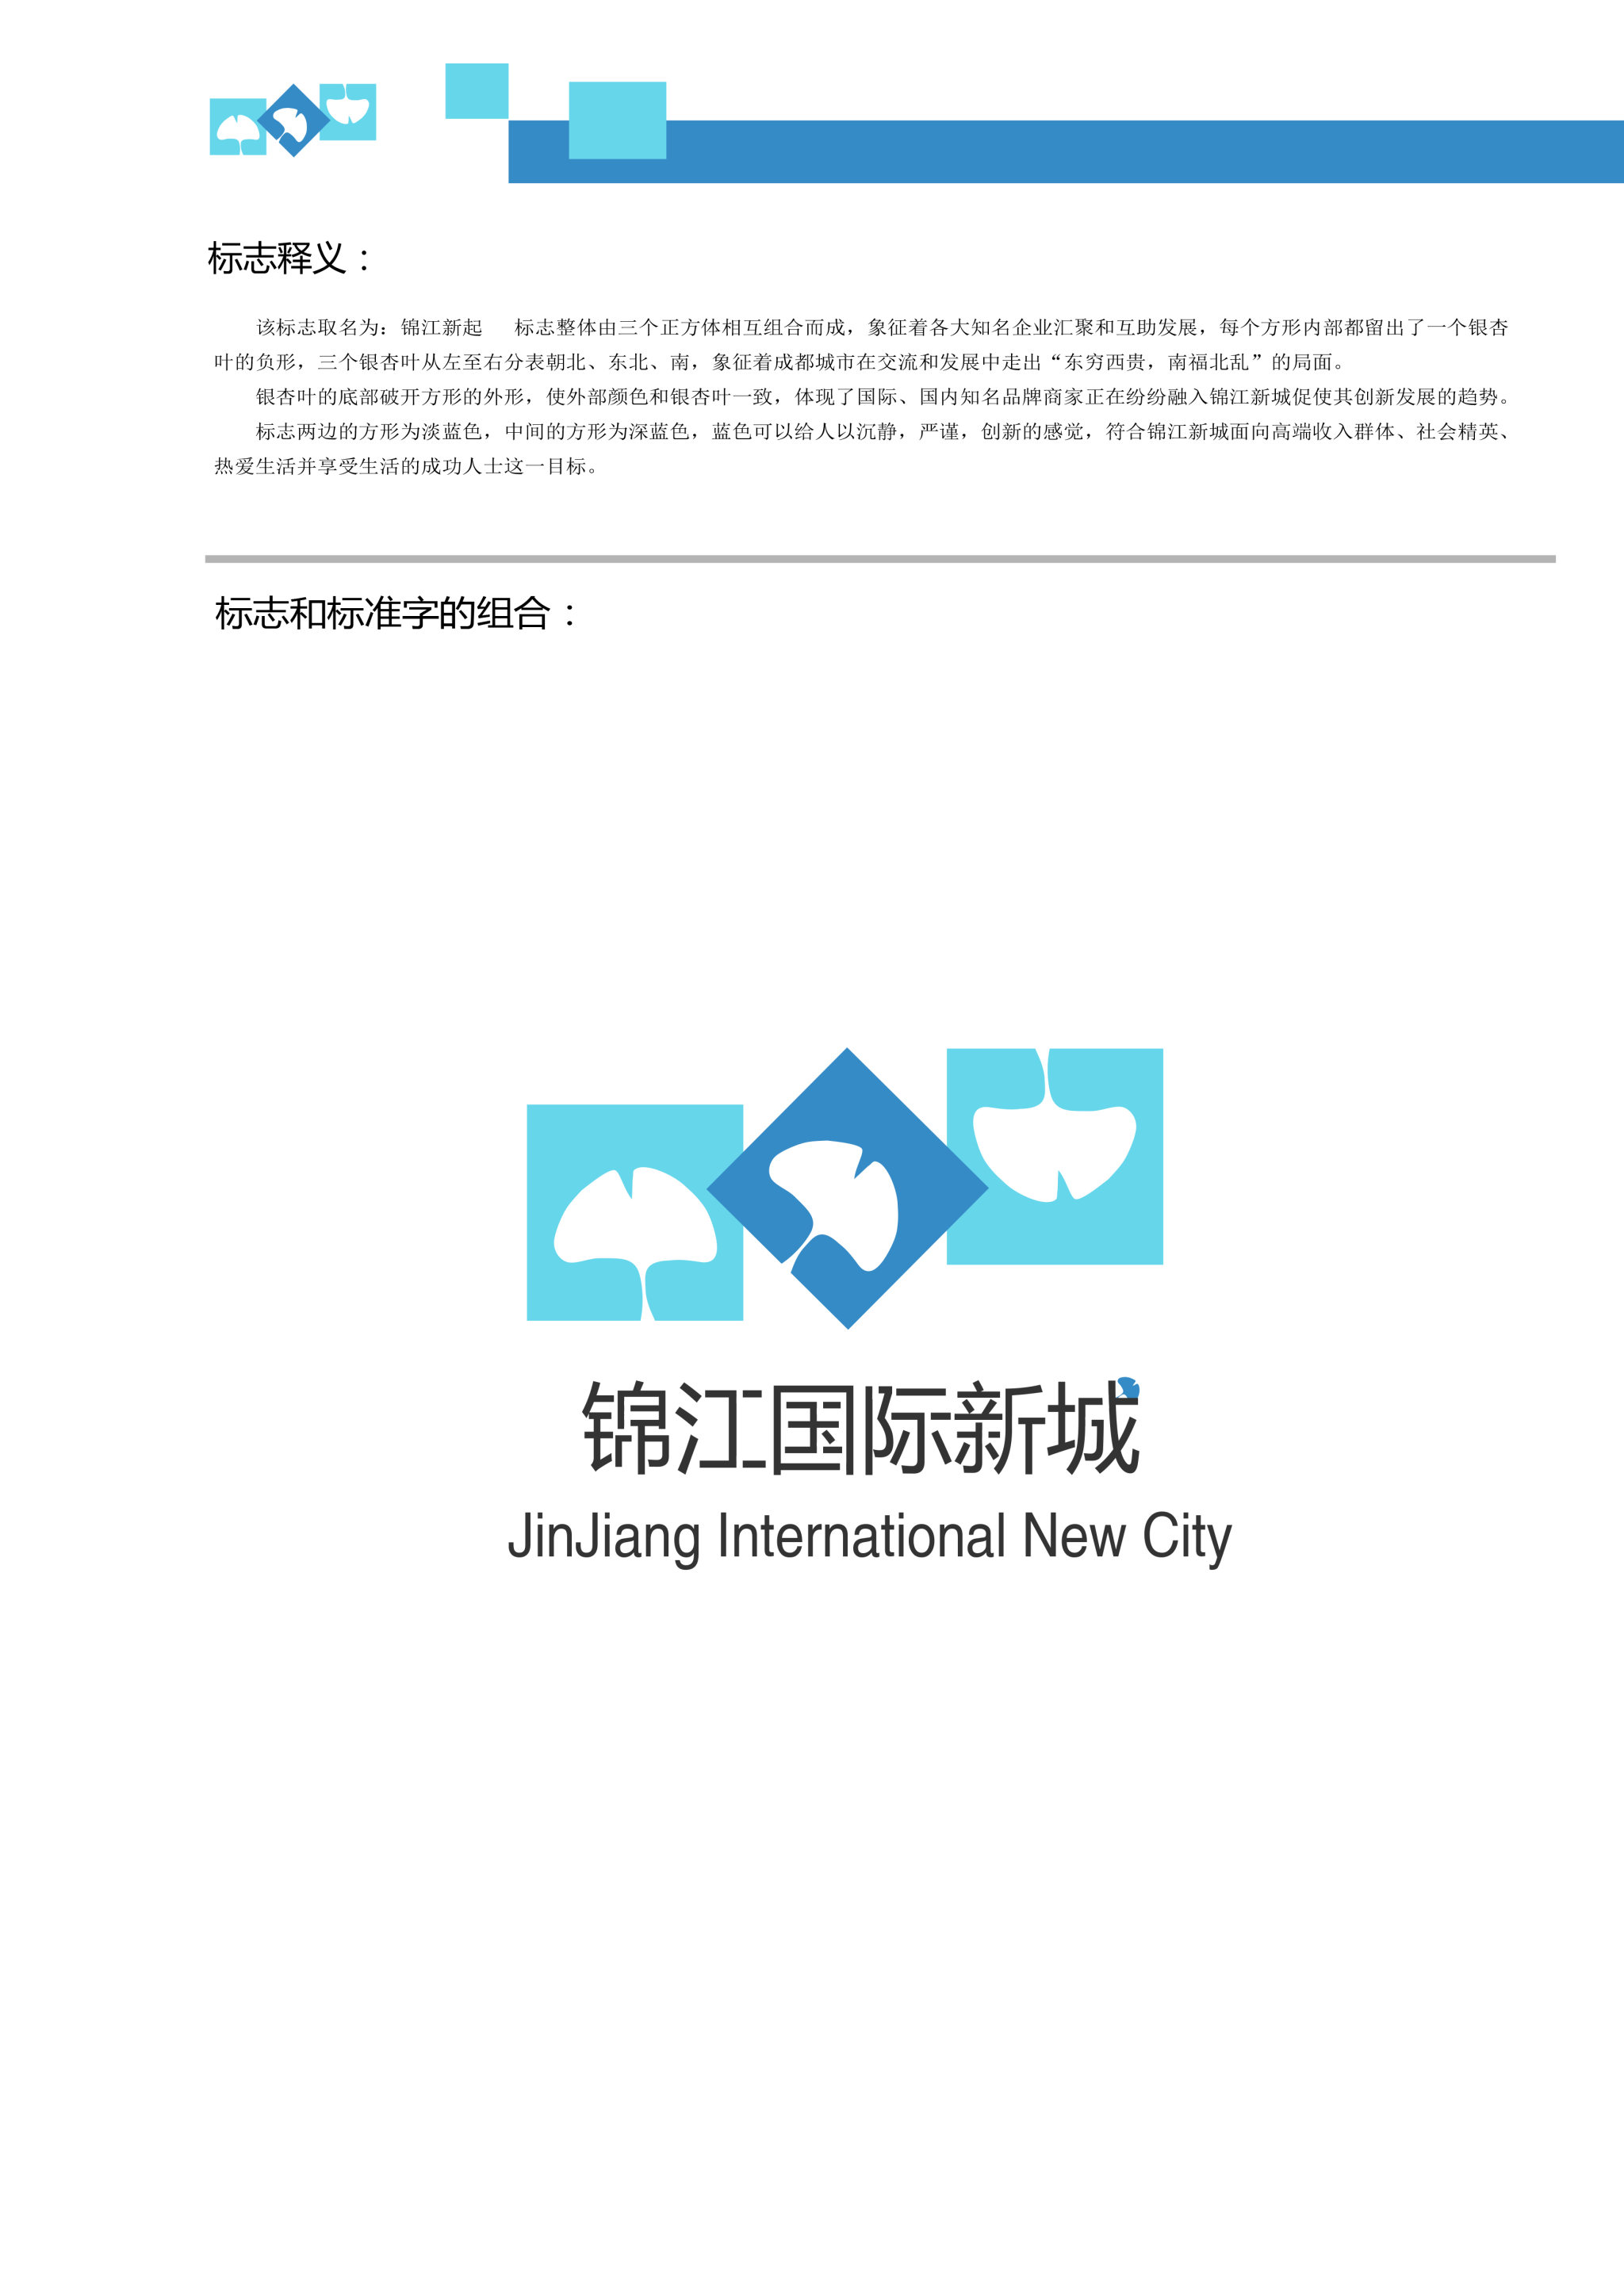 有关锦江国际新城的logo设计.